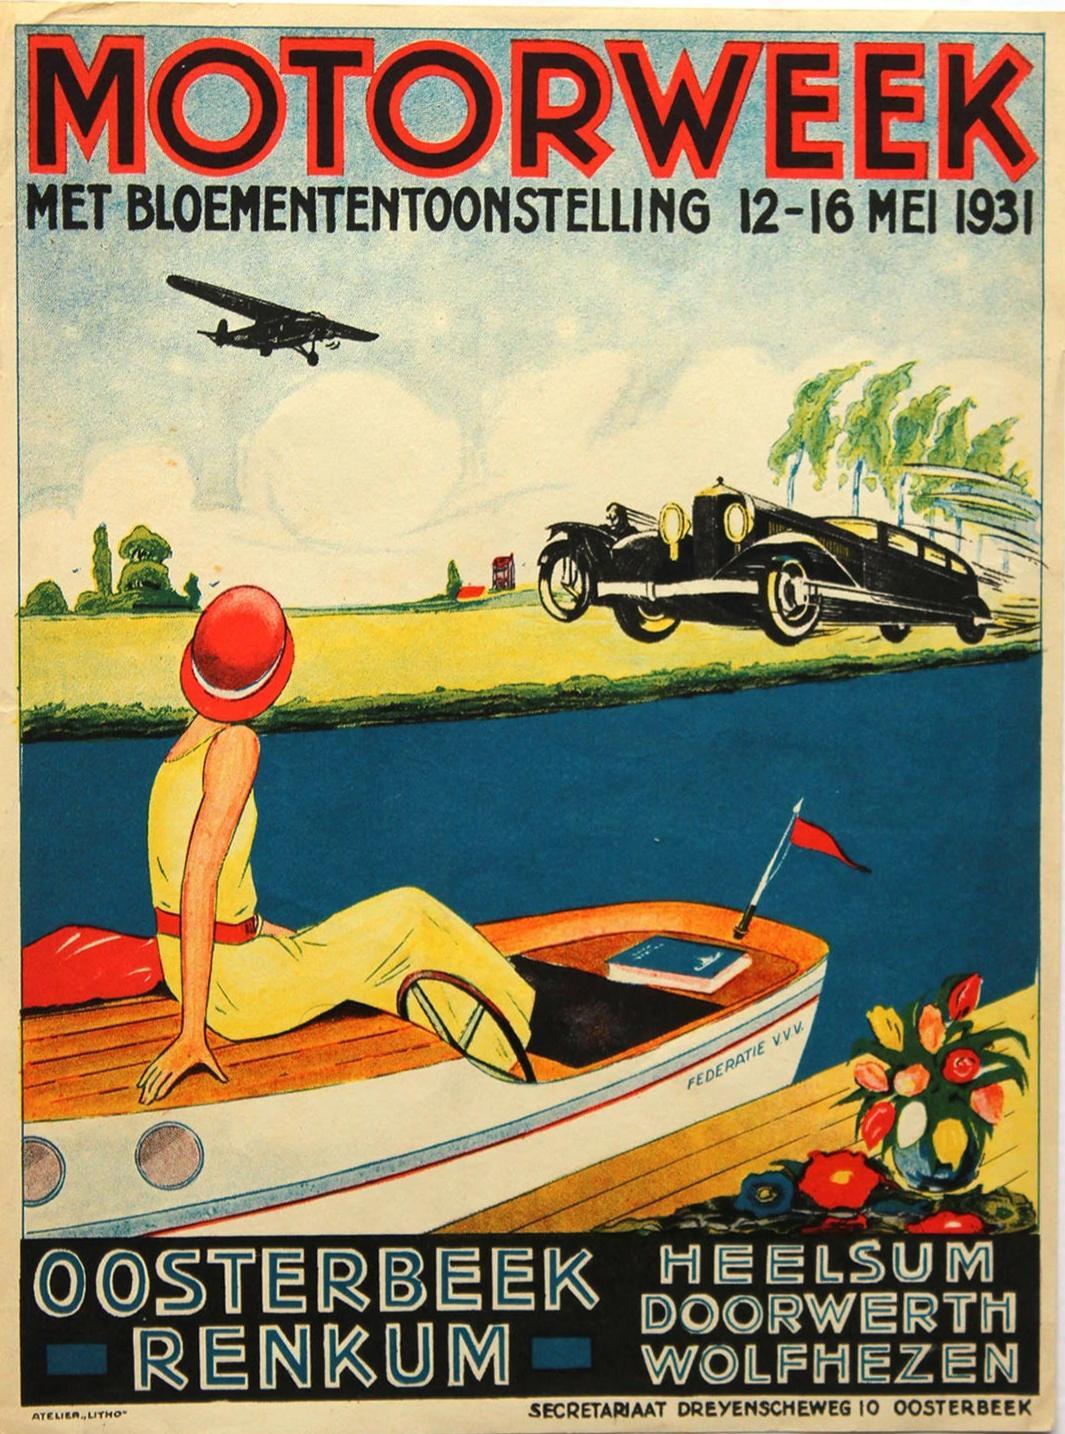 Motorweek at Oosterbeek May 1931 Enlarged